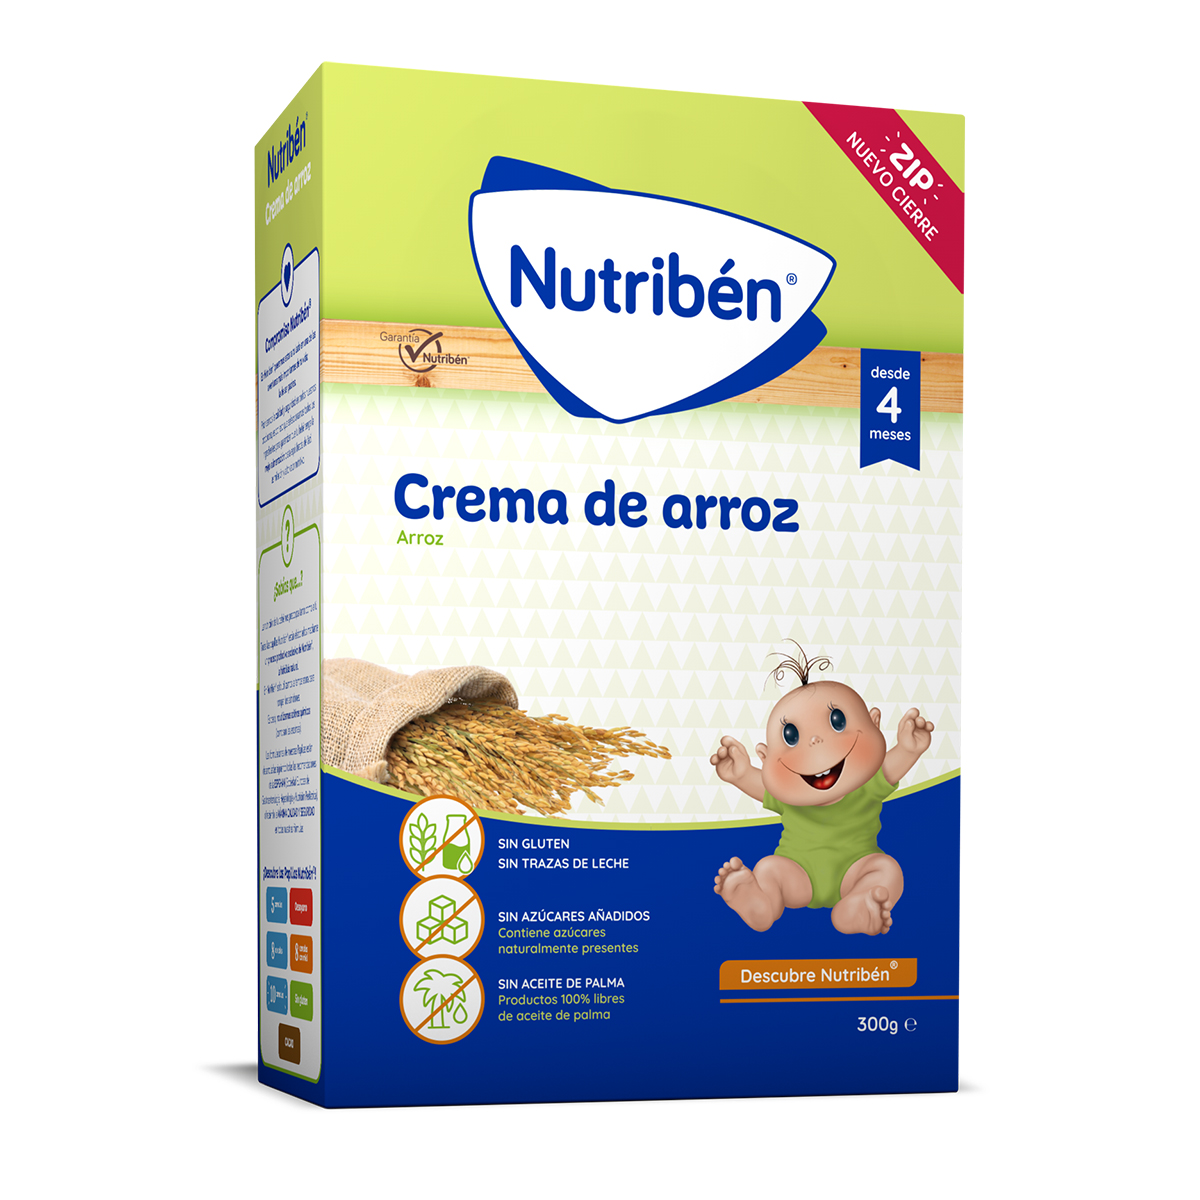 Nutriben SIN GLUTEN Papilla Cereales +4 meses, - Farma SG